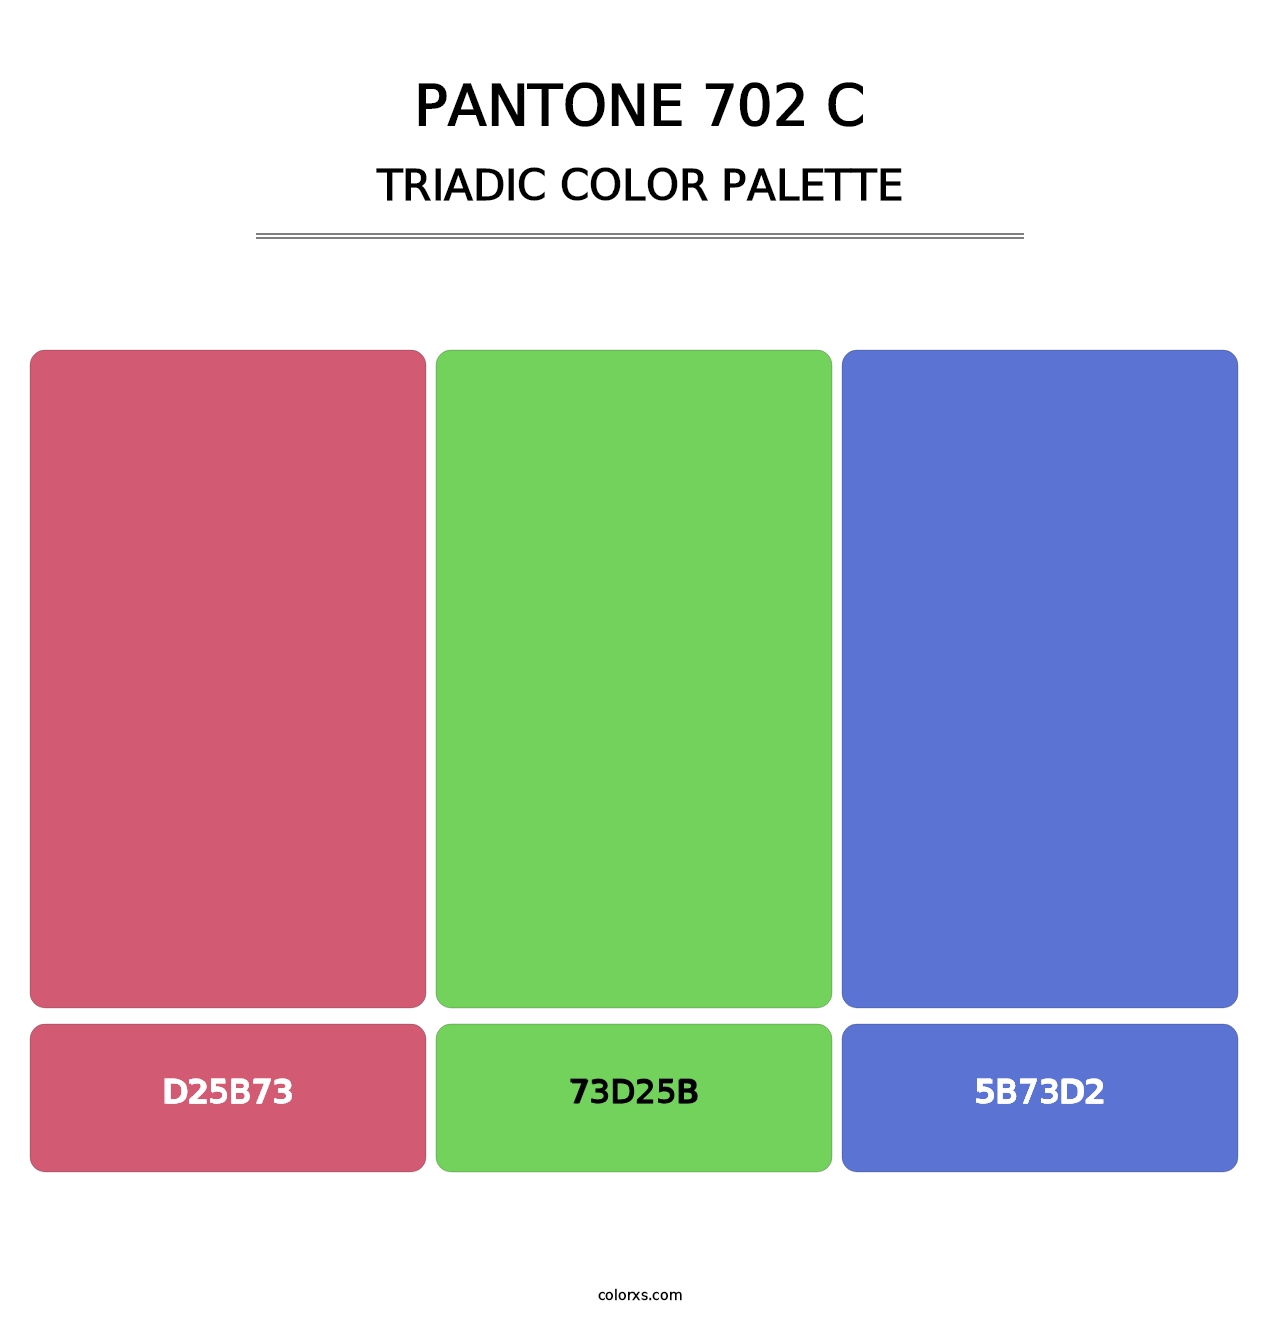 PANTONE 702 C - Triadic Color Palette